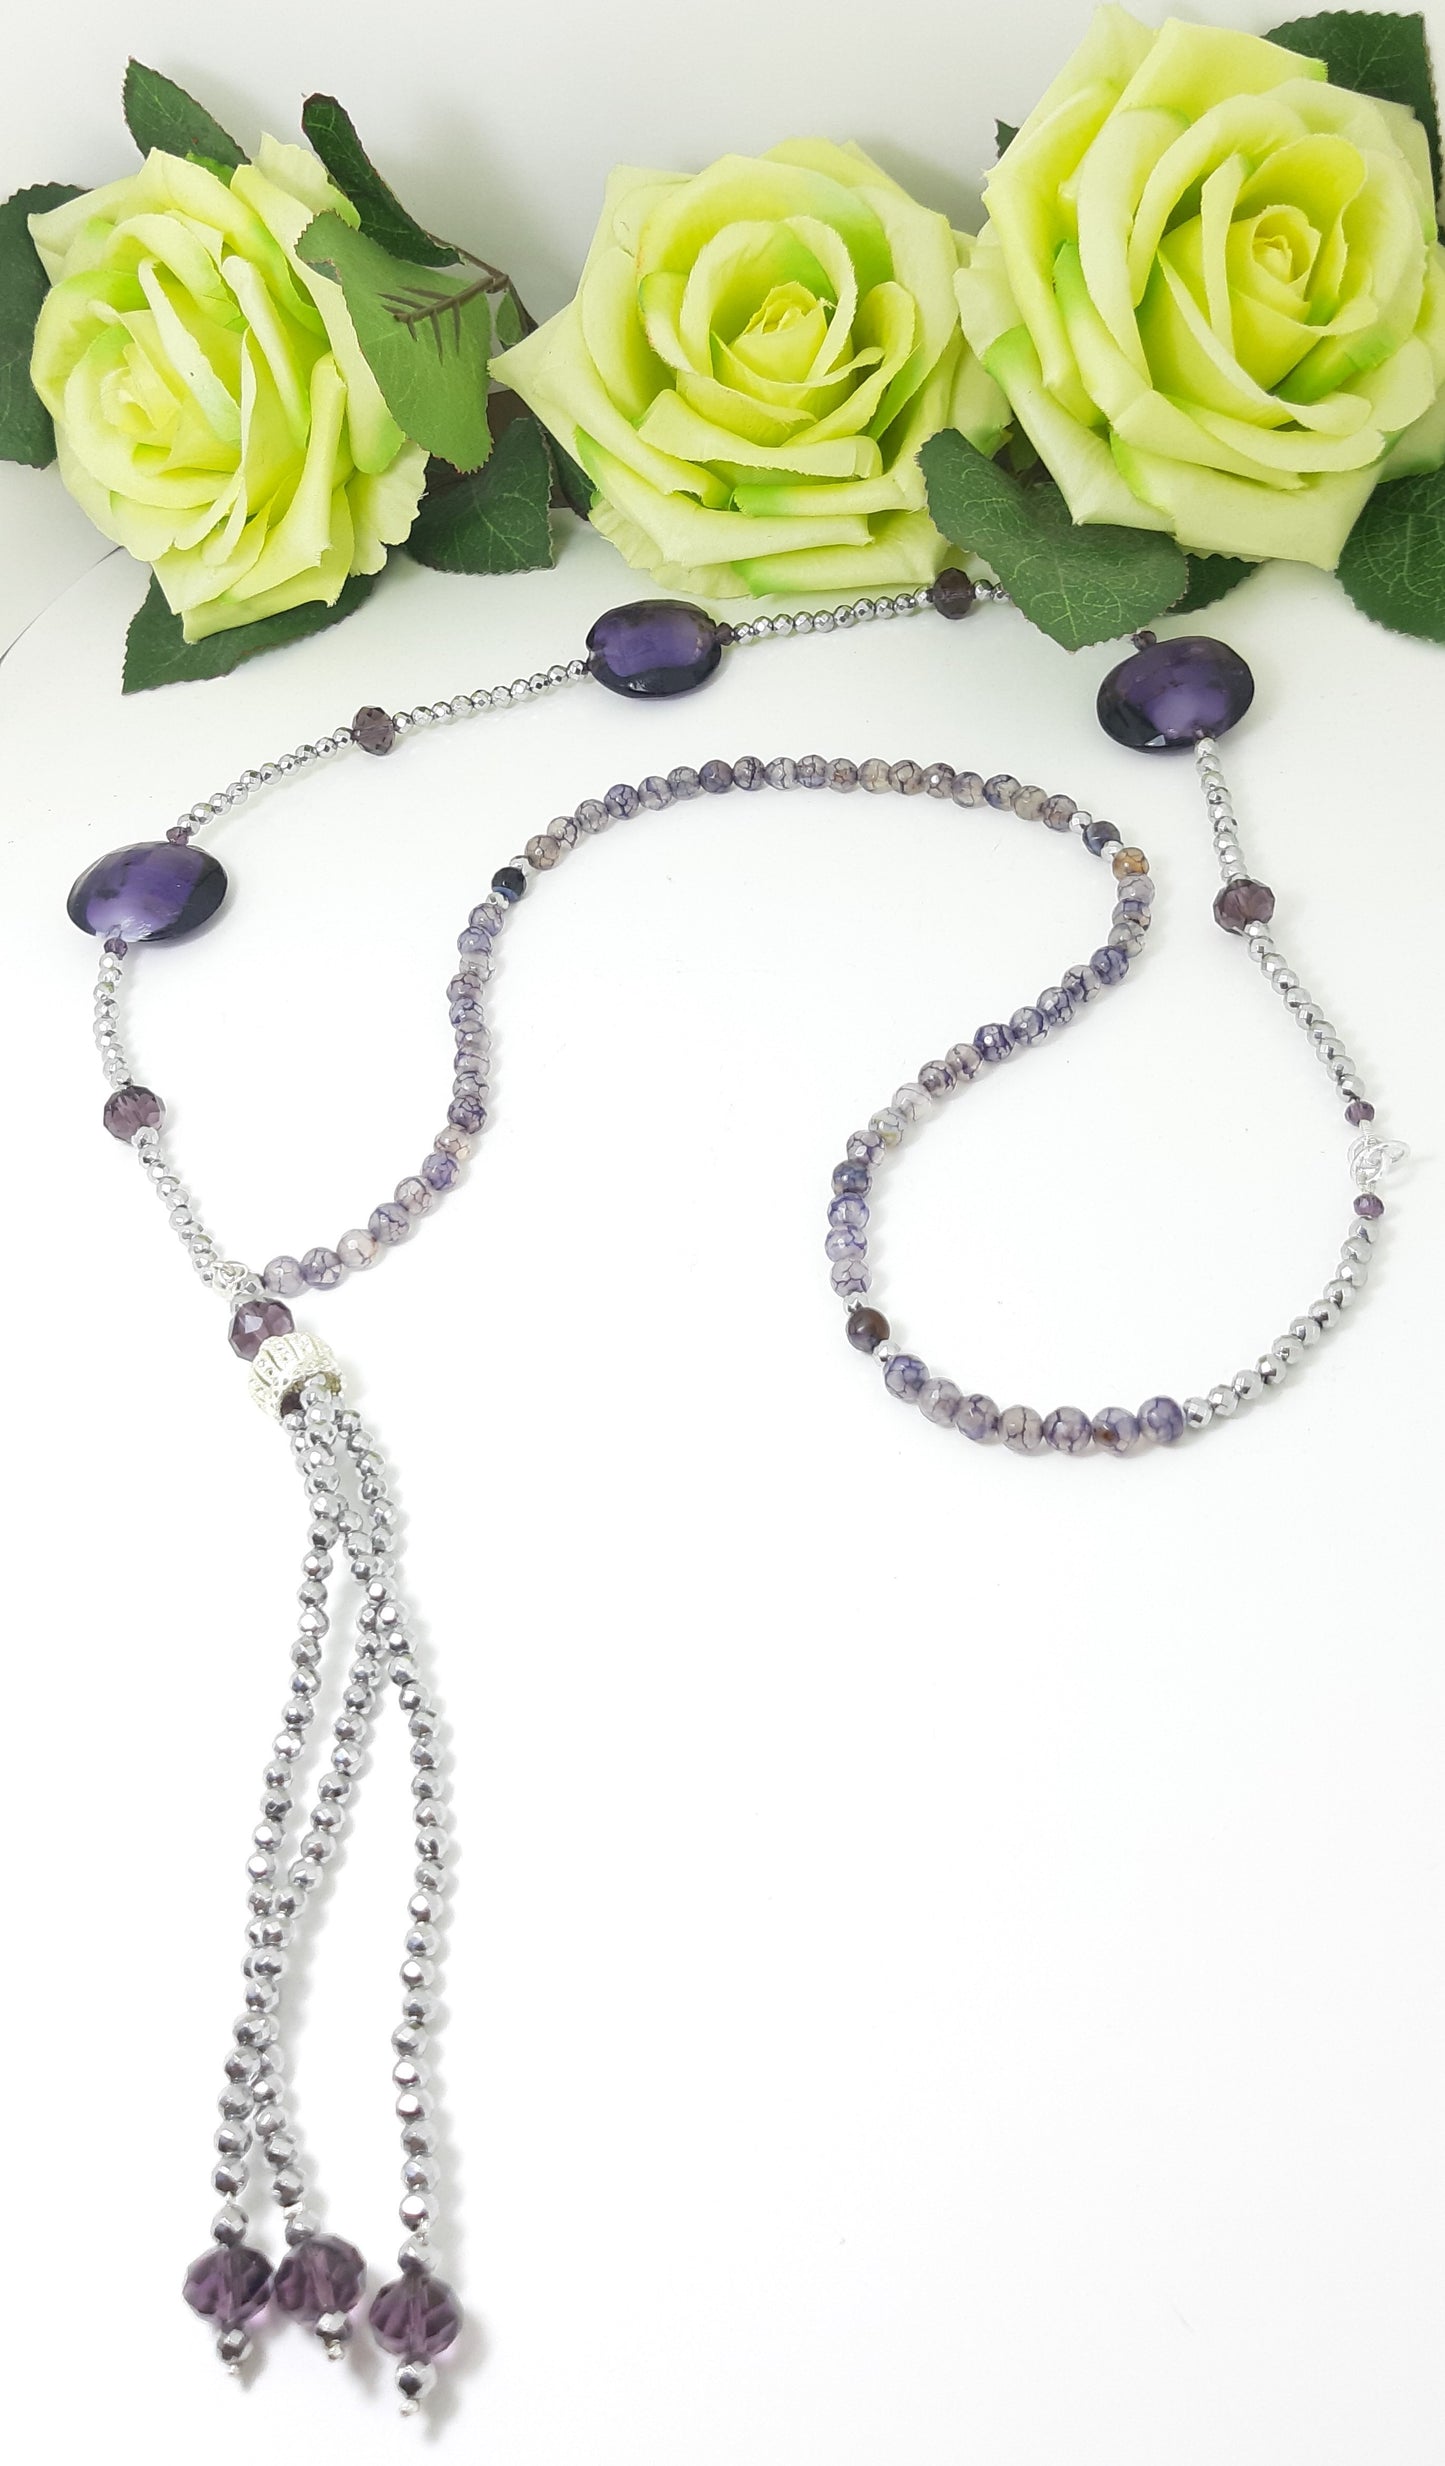 Orecchini ZELDA .036 lunghi  in ematite color argento e cristallo viola.